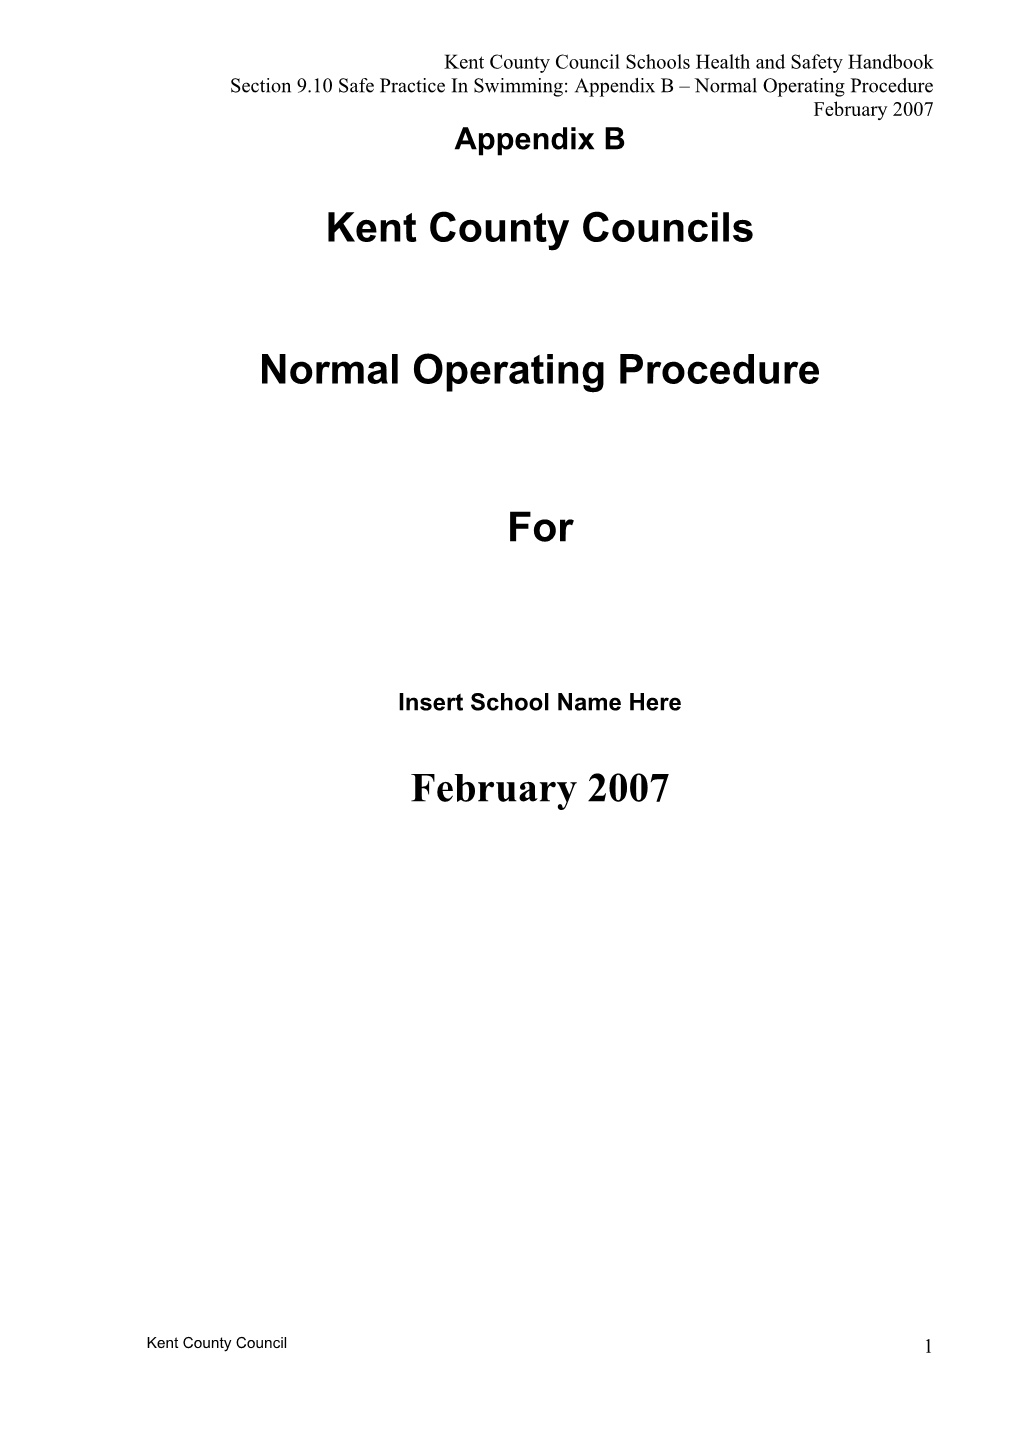 Appendix B Normal Operating Procedure